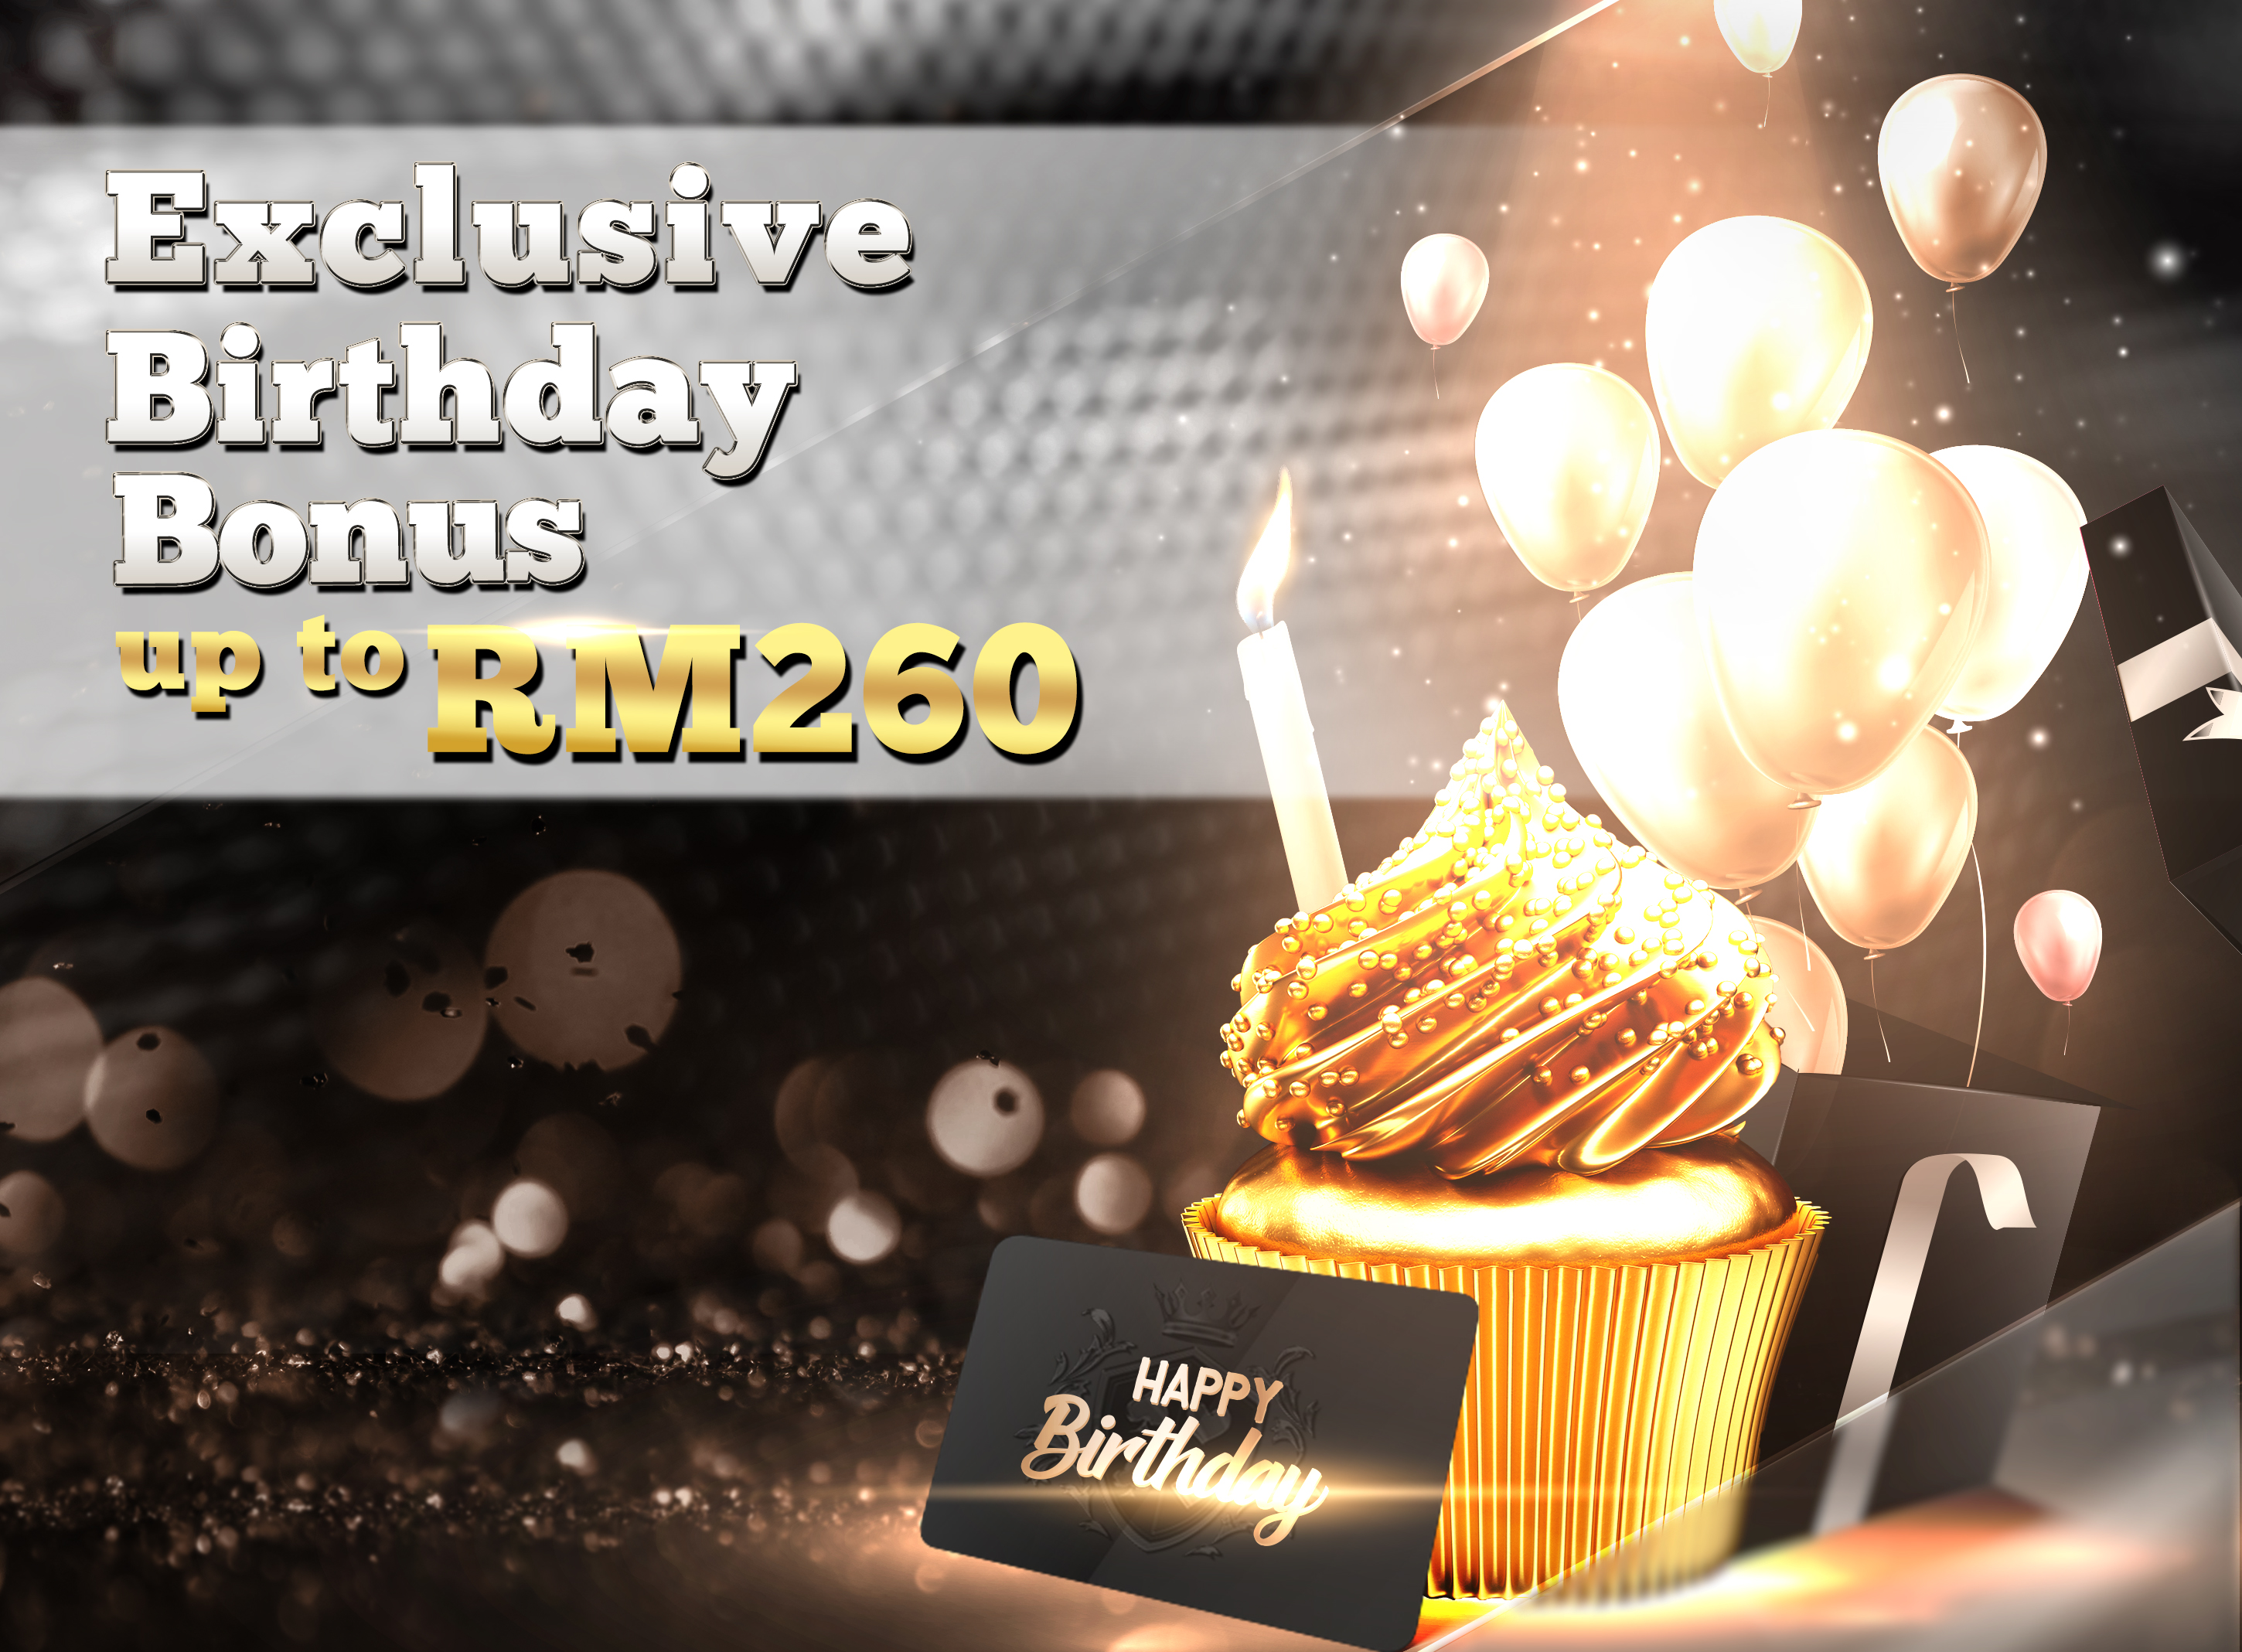 Exclusive Birthday Bonus Up To RM 260